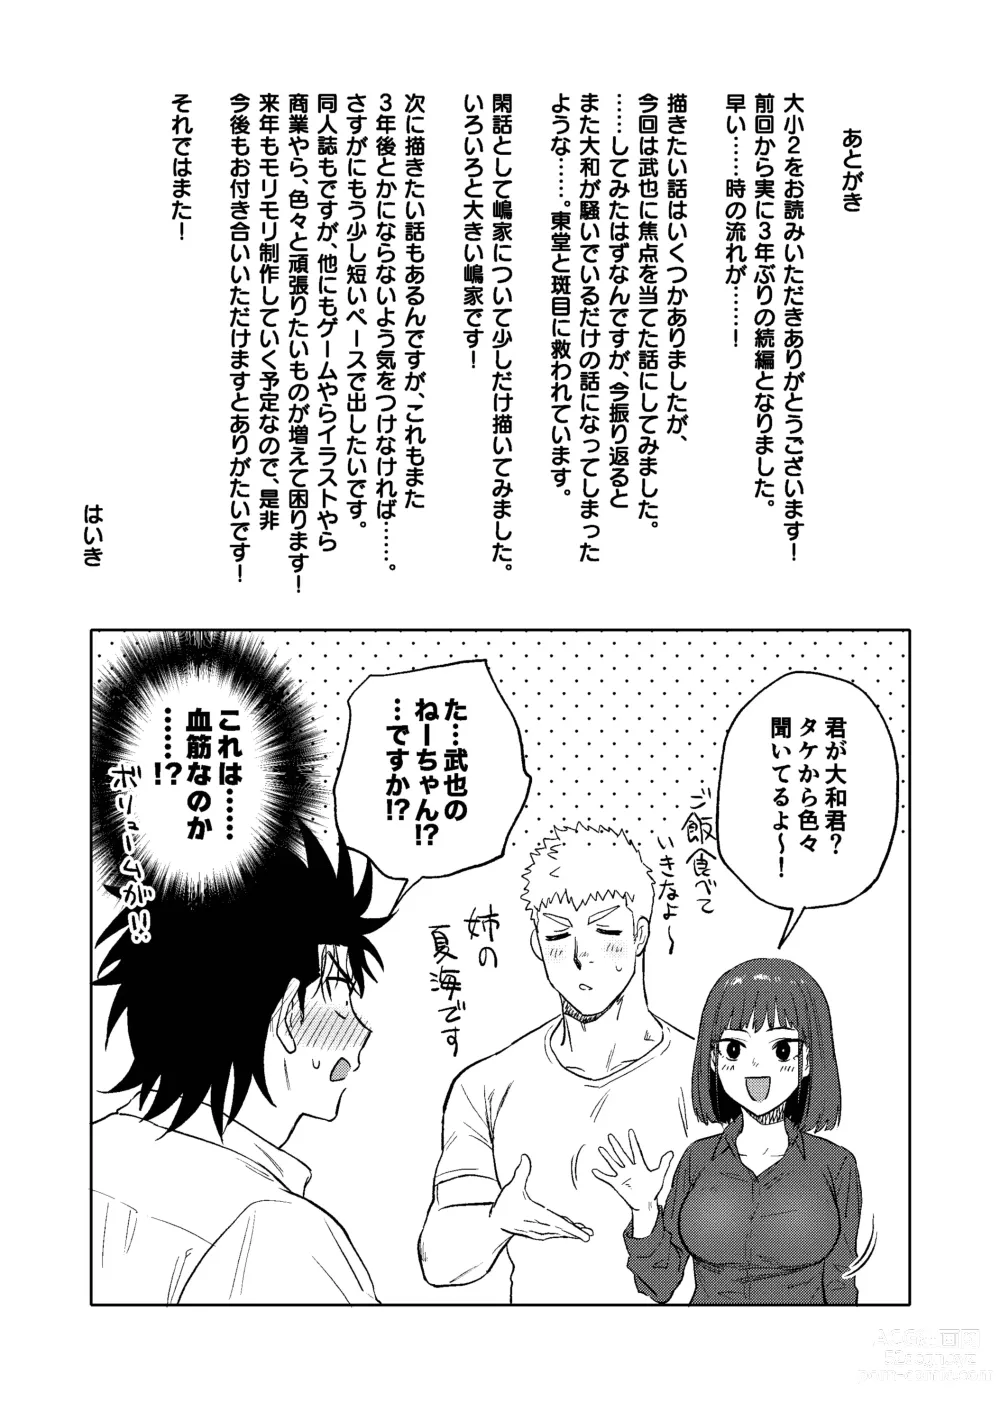 Page 52 of doujinshi Dainarishounari 2